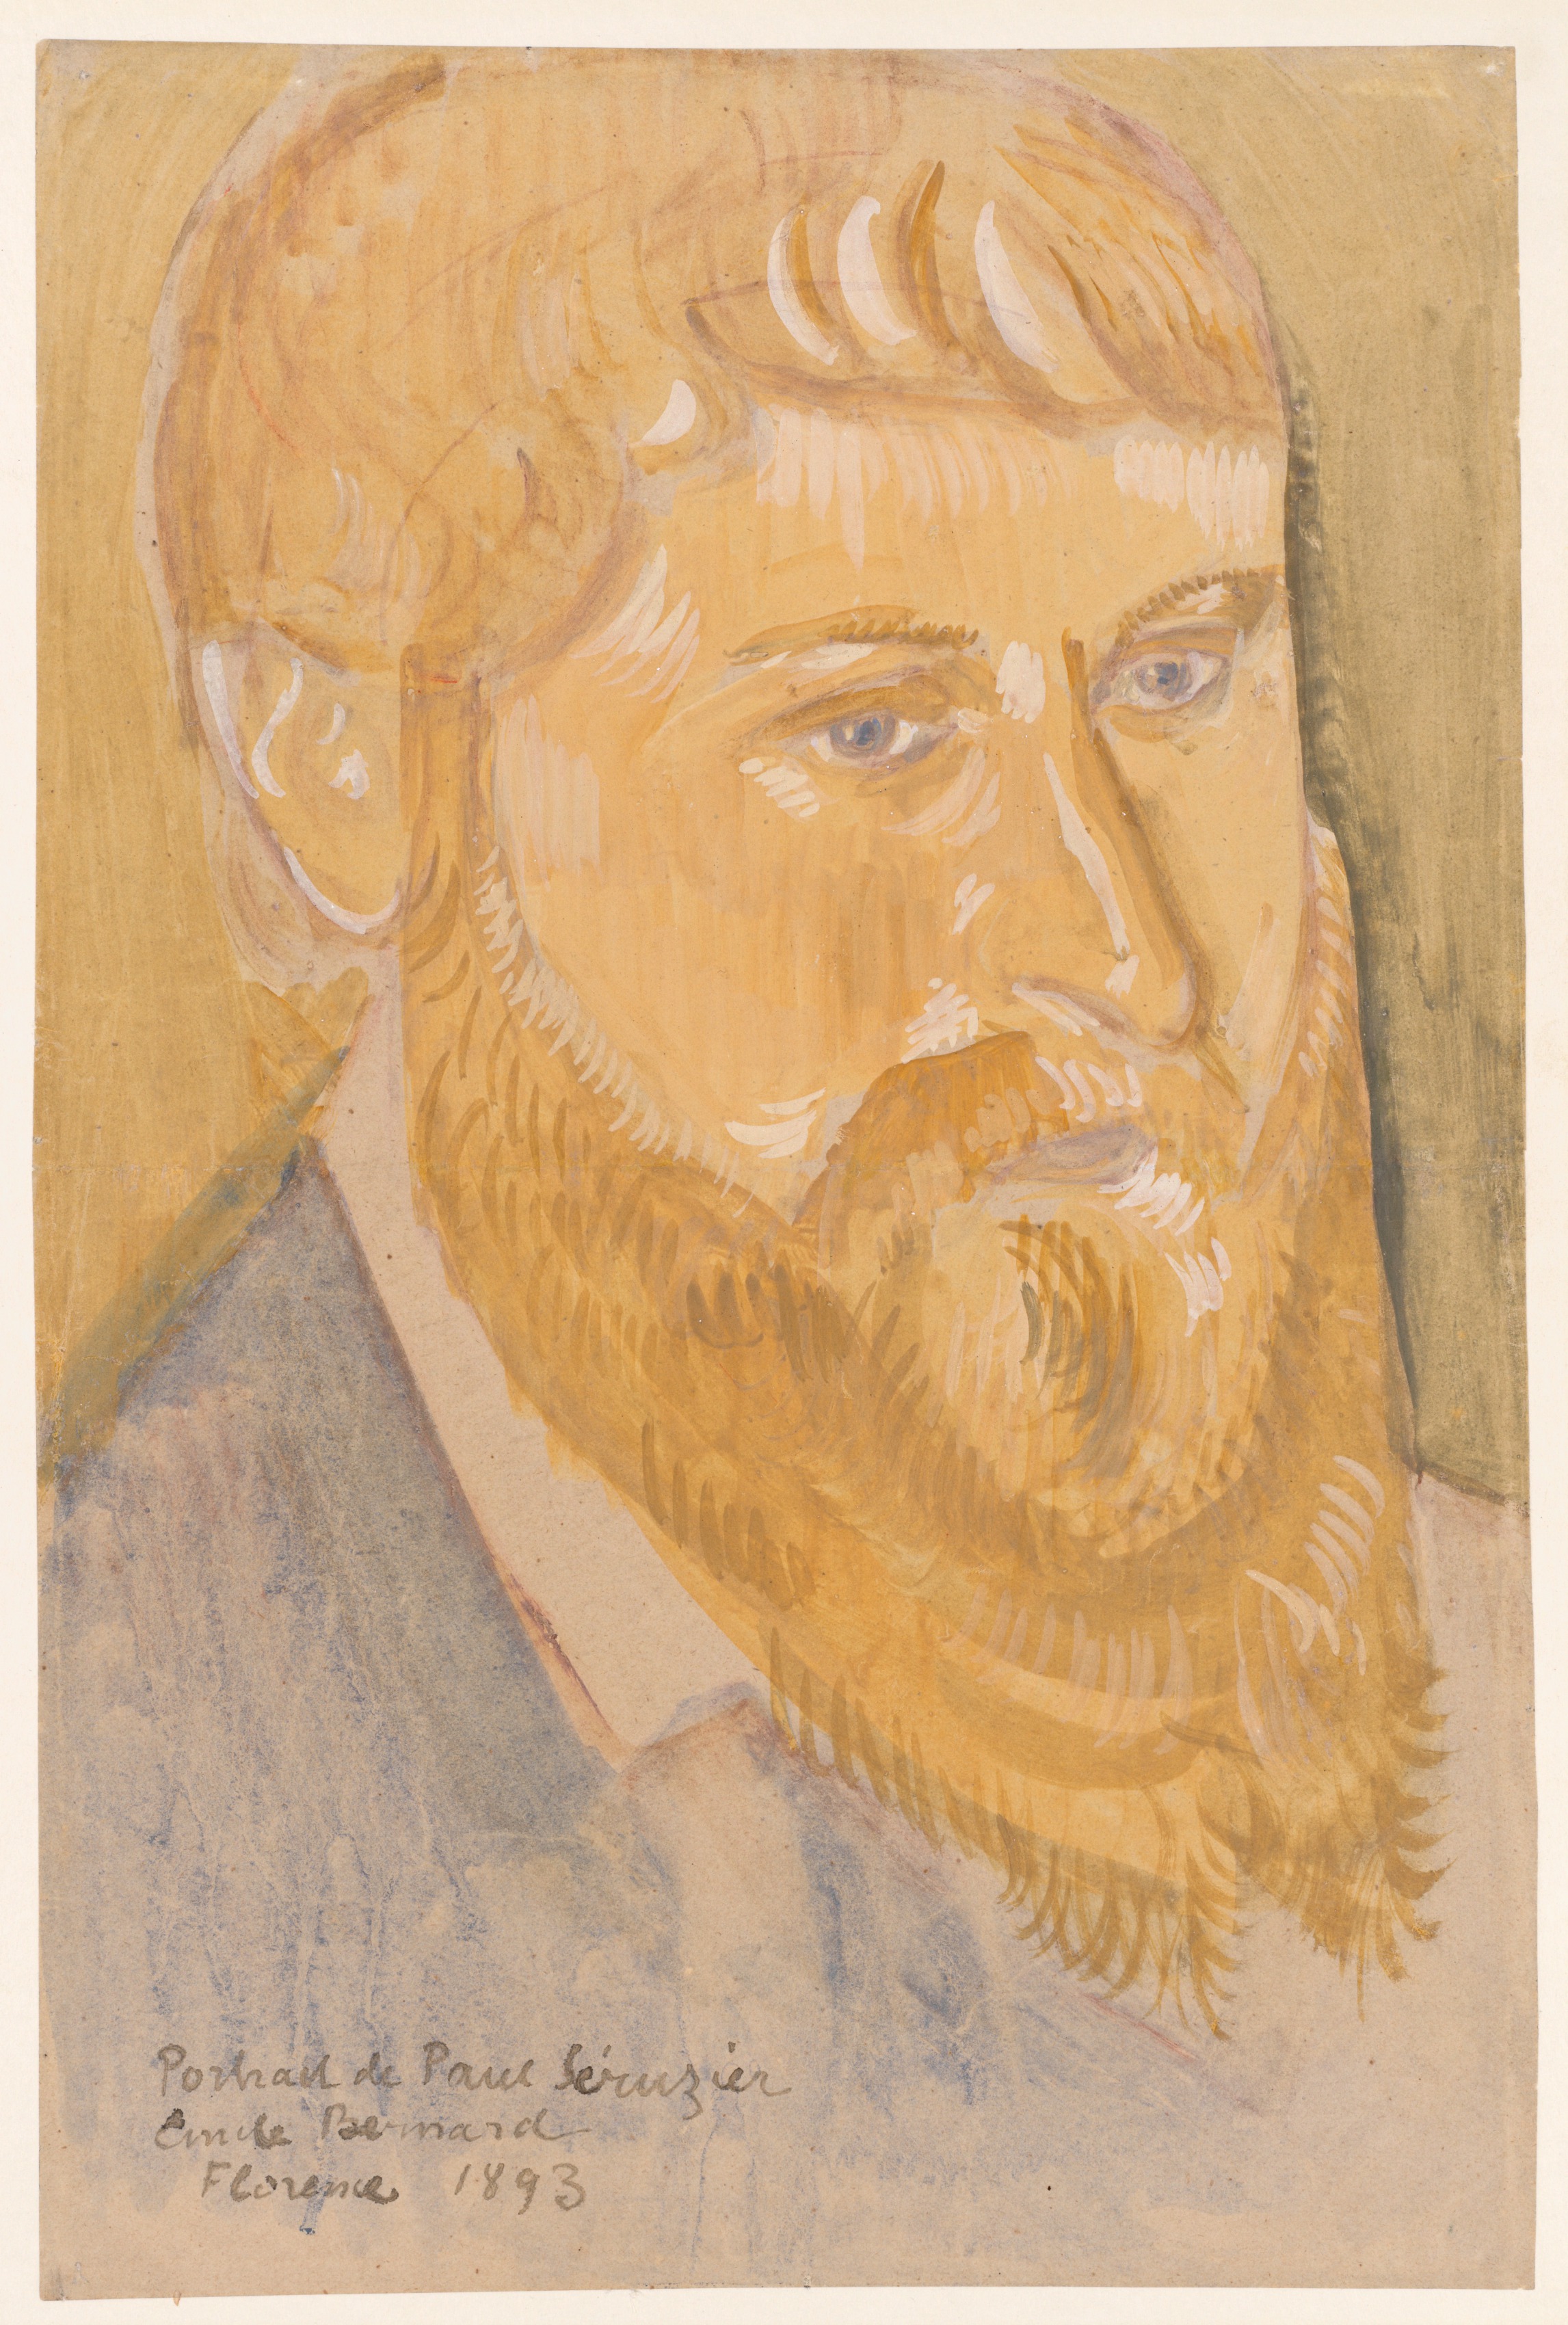 Portrait of Paul Sérusier